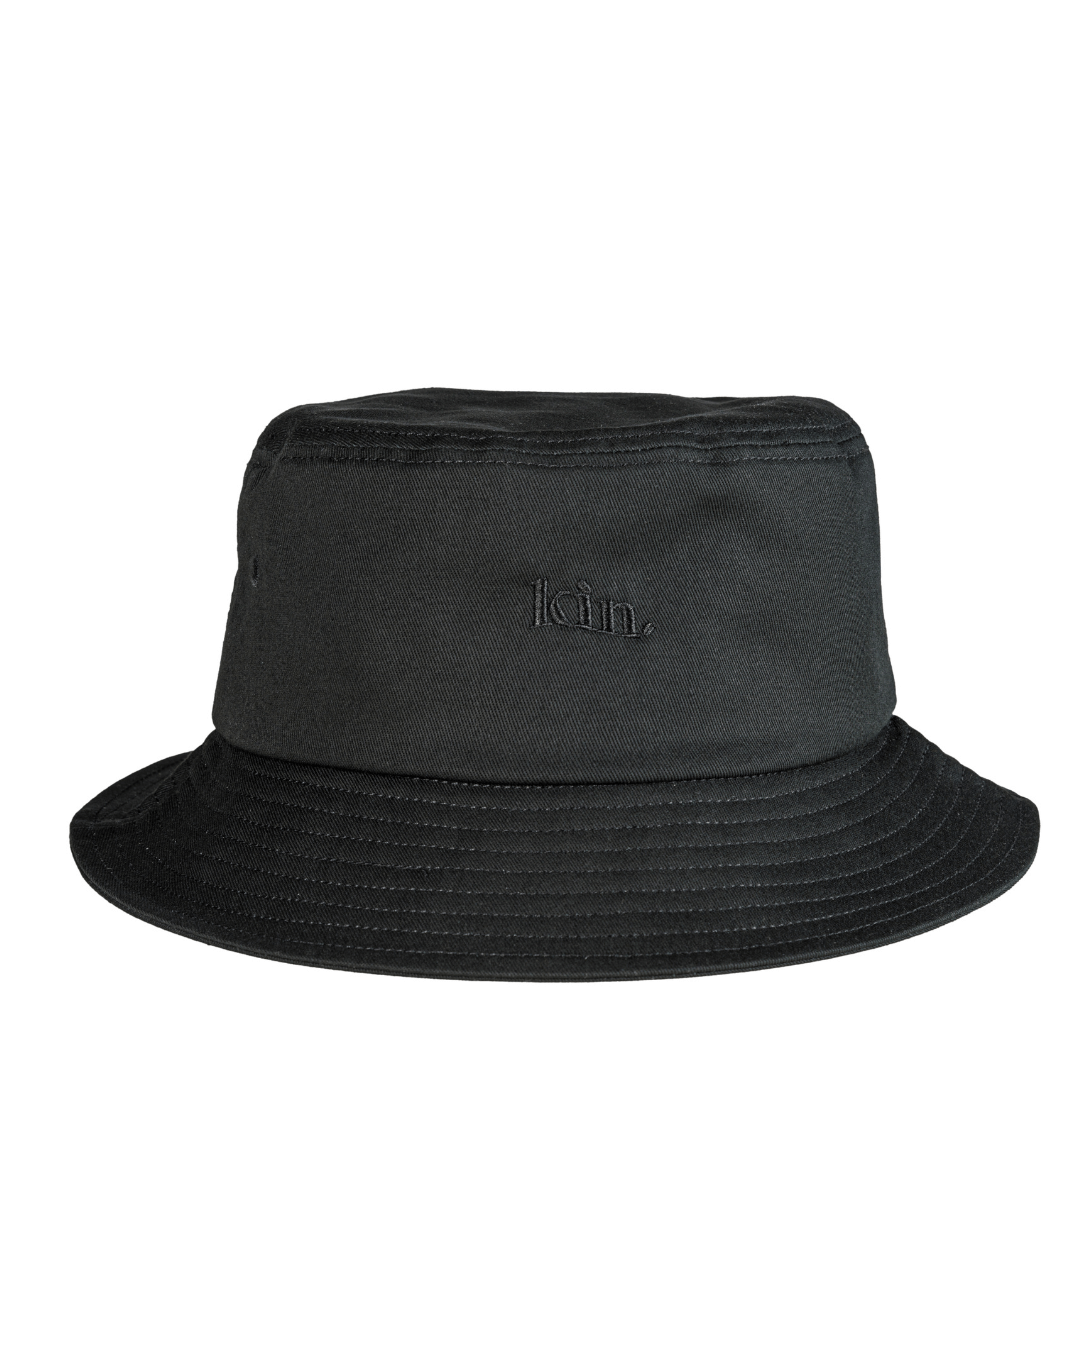 All Black Lined KINApparel Hat Satin | Bucket